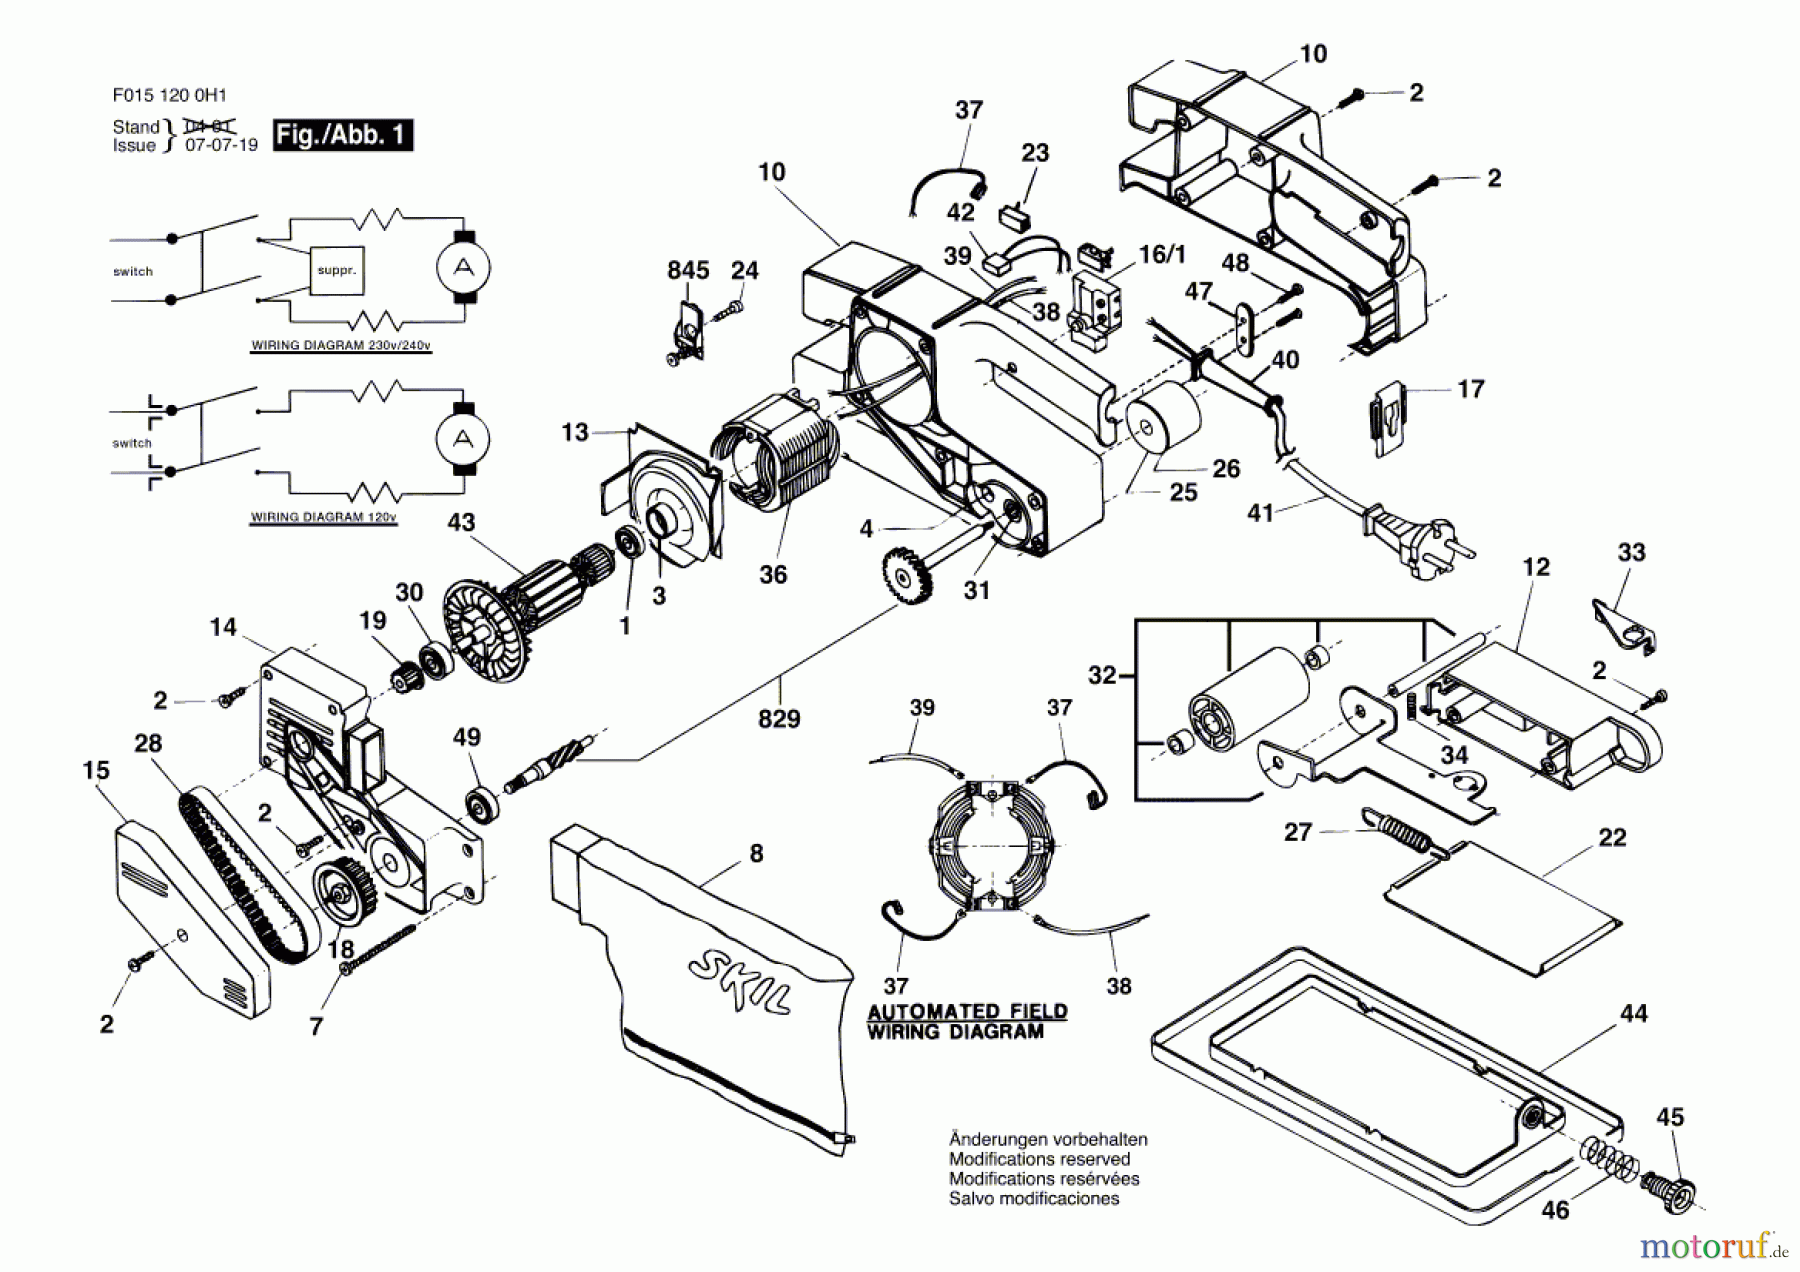  Bosch Werkzeug Bandschleifer 1200H1 Seite 1